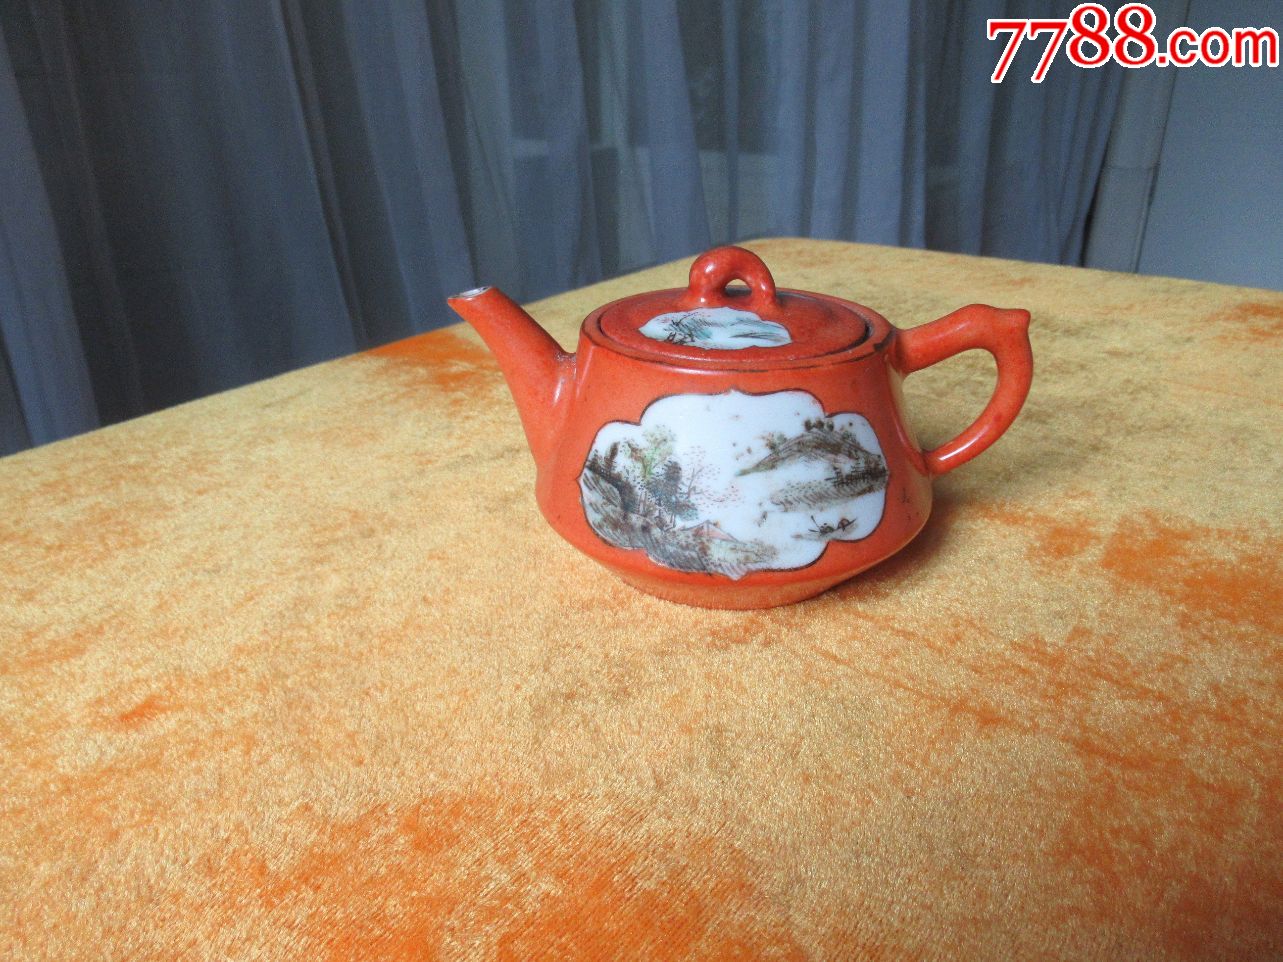 红釉瓷浅绛彩手绘山水画底款江西振发瓷社民国茶壶(以图为准)